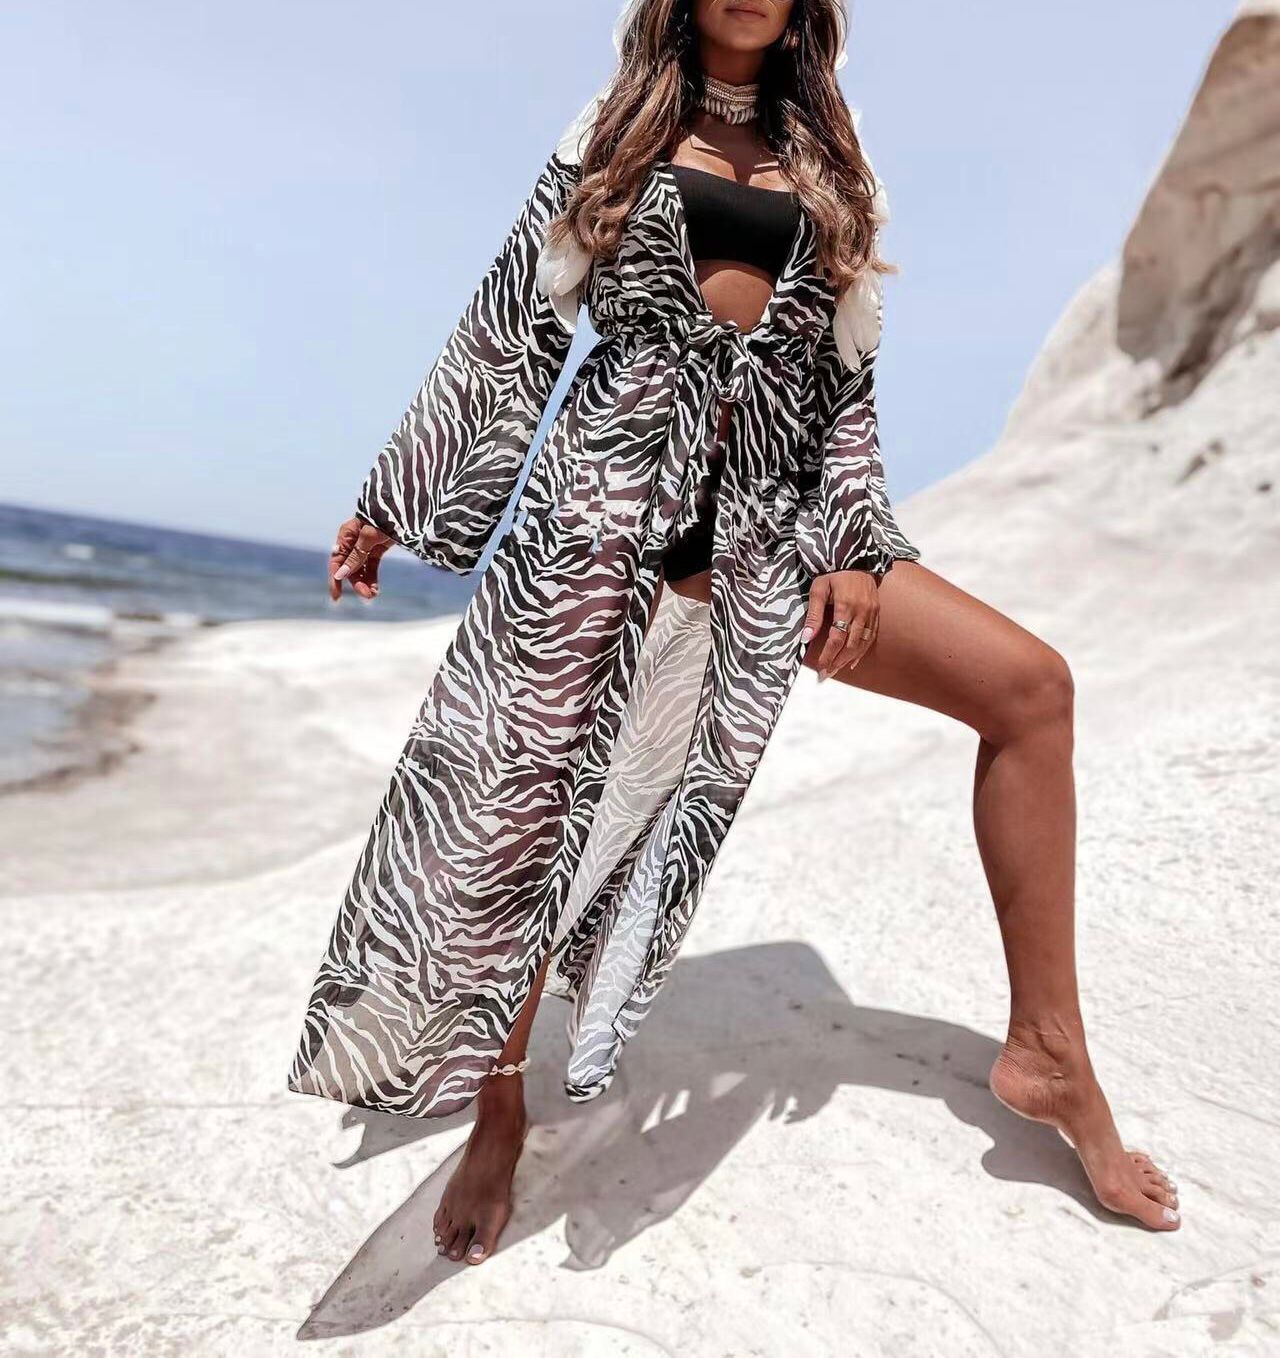 Copricostume Donna Fantasia Zebrata Animalier Moda Mare Beachwear Sensuale - LE STYLE DE PARIS